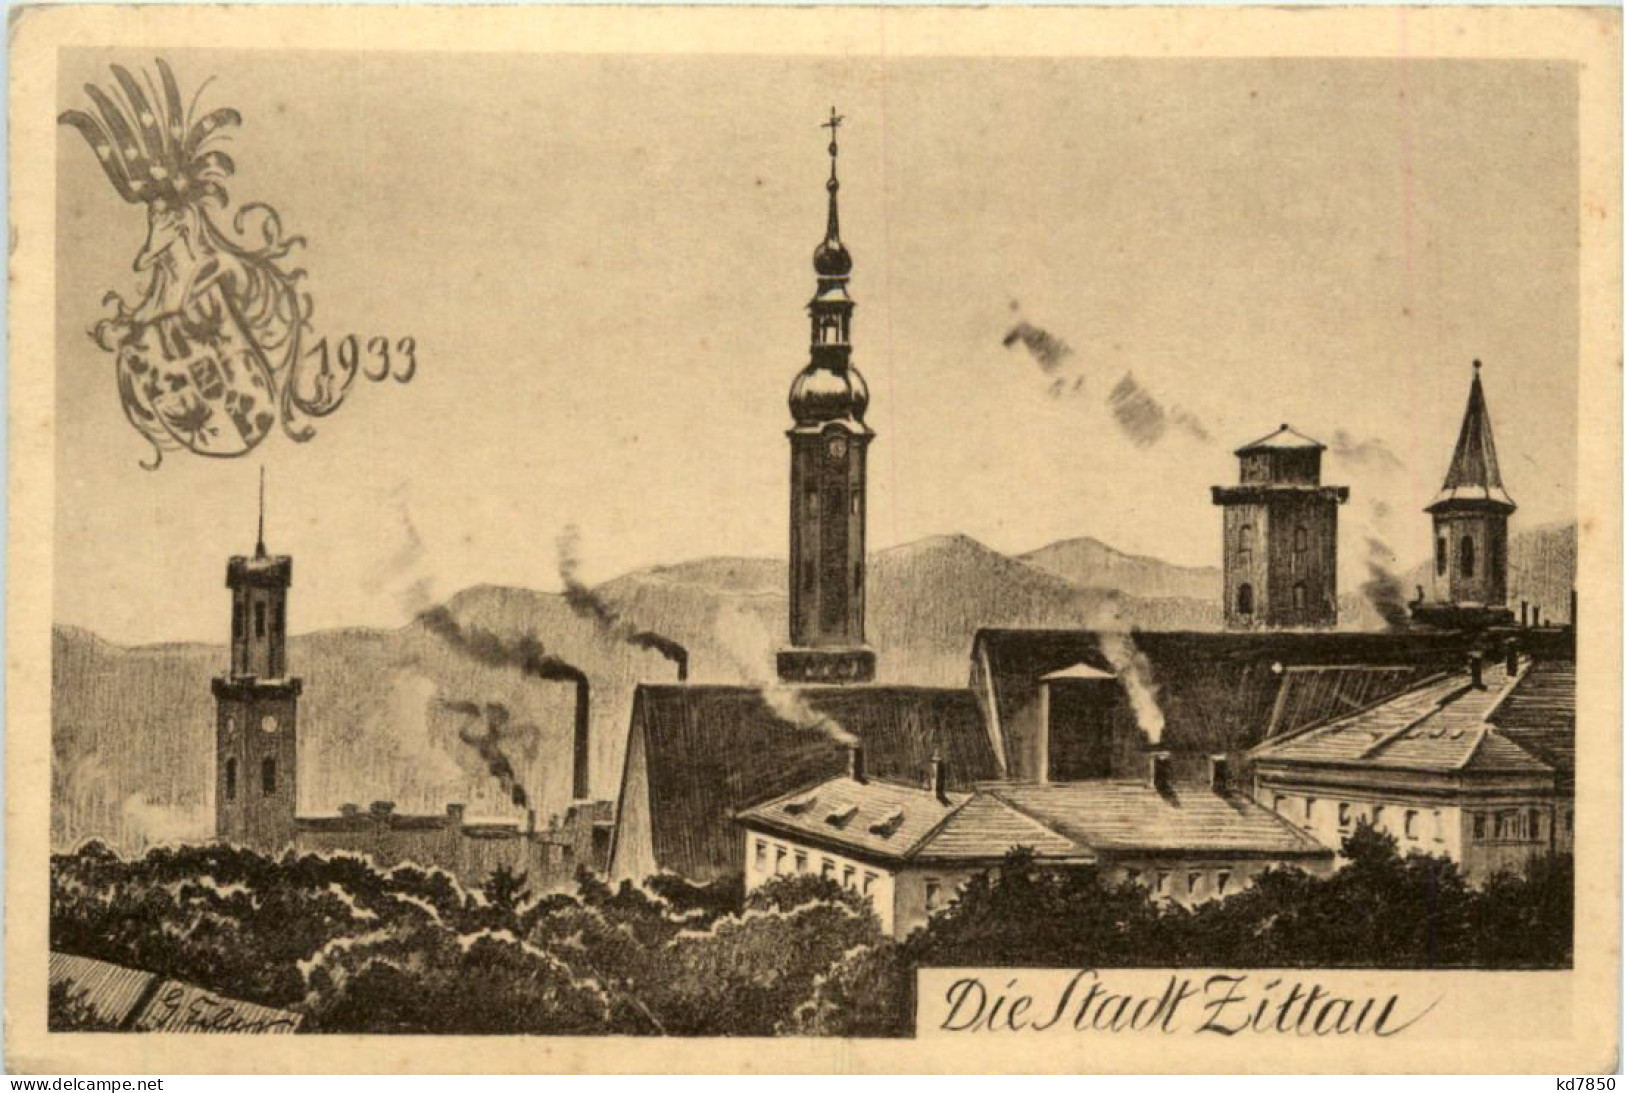 Die Stadt Zittau 1933 - Zittau